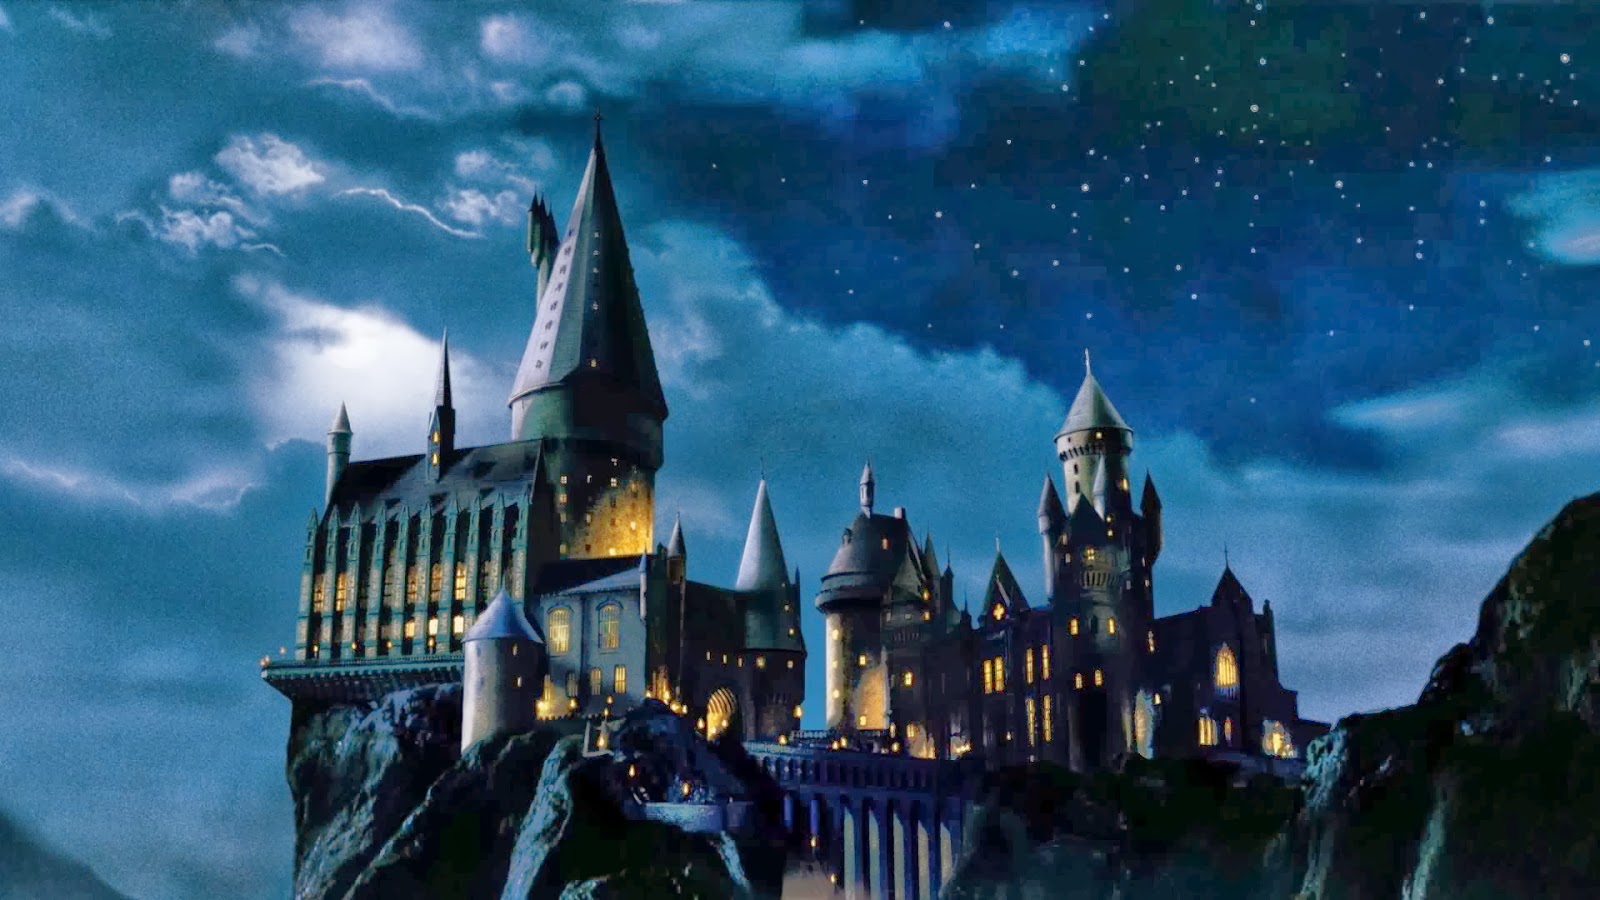 High Resolution Wallpaper | Hogwarts Castle 1600x900 px